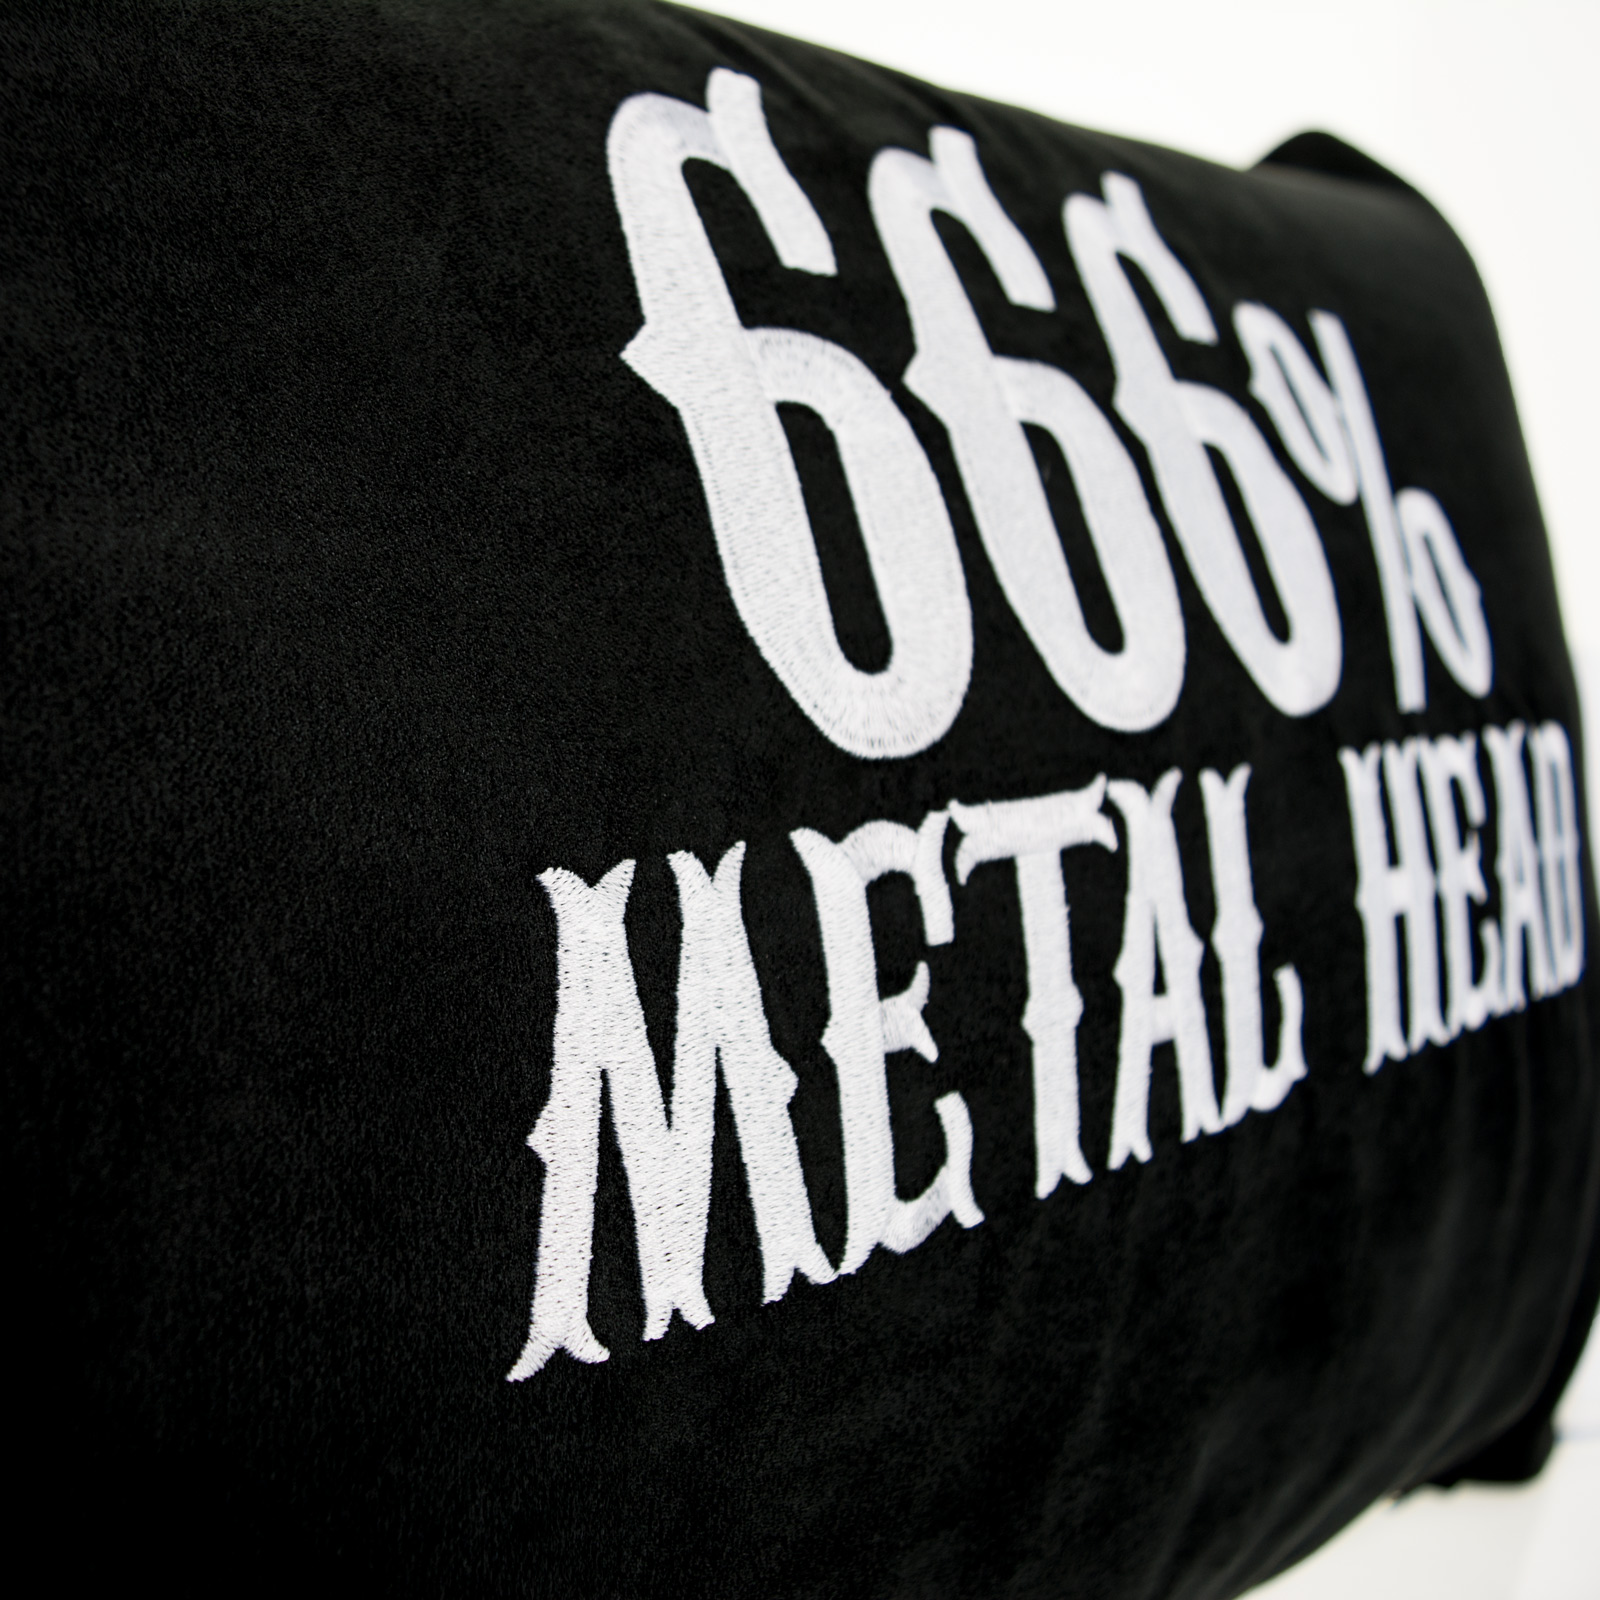 666% Metal Head